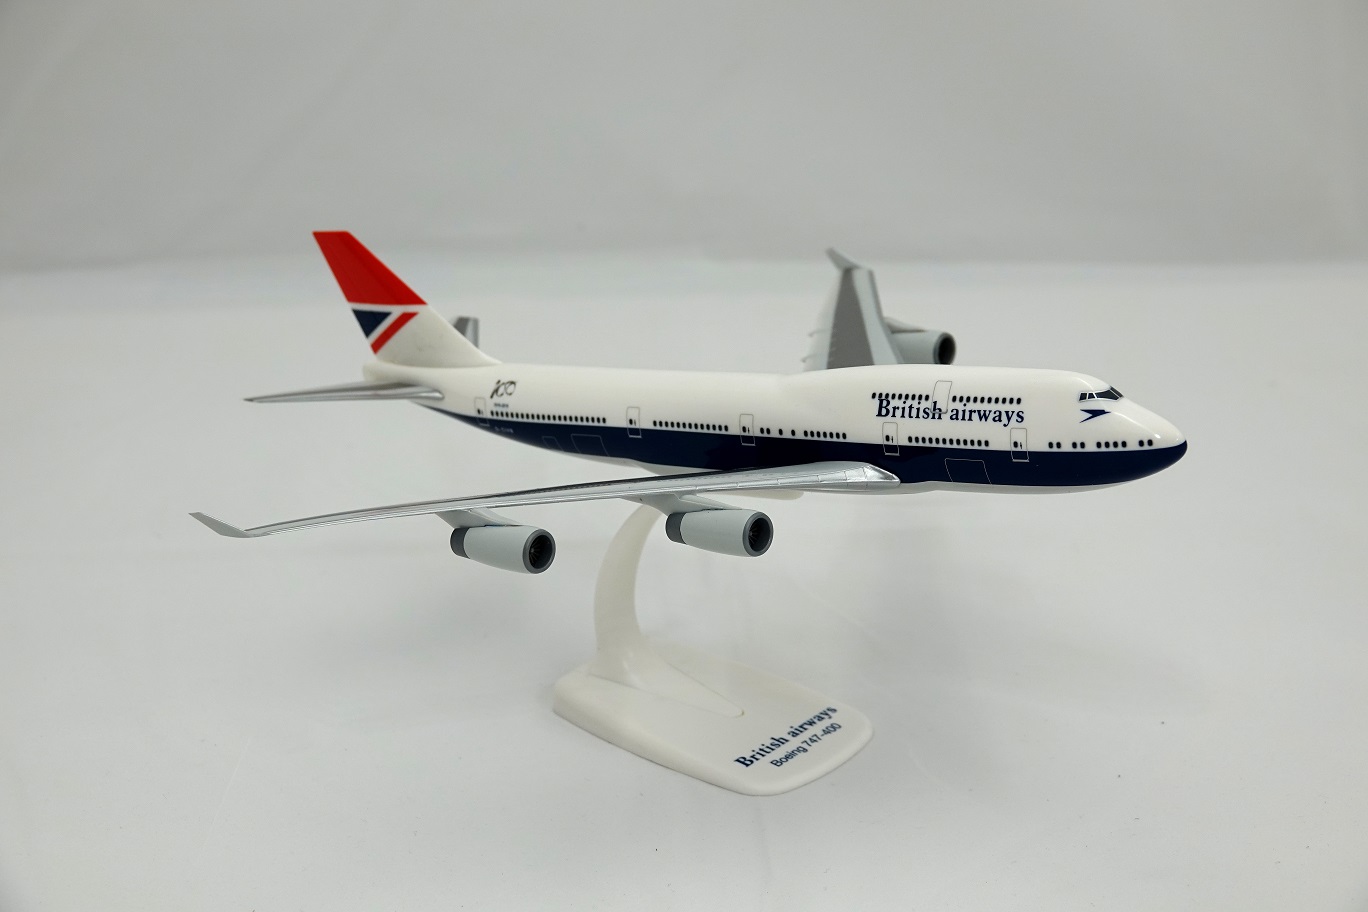 British Airways (Negus) Boeing 747-400